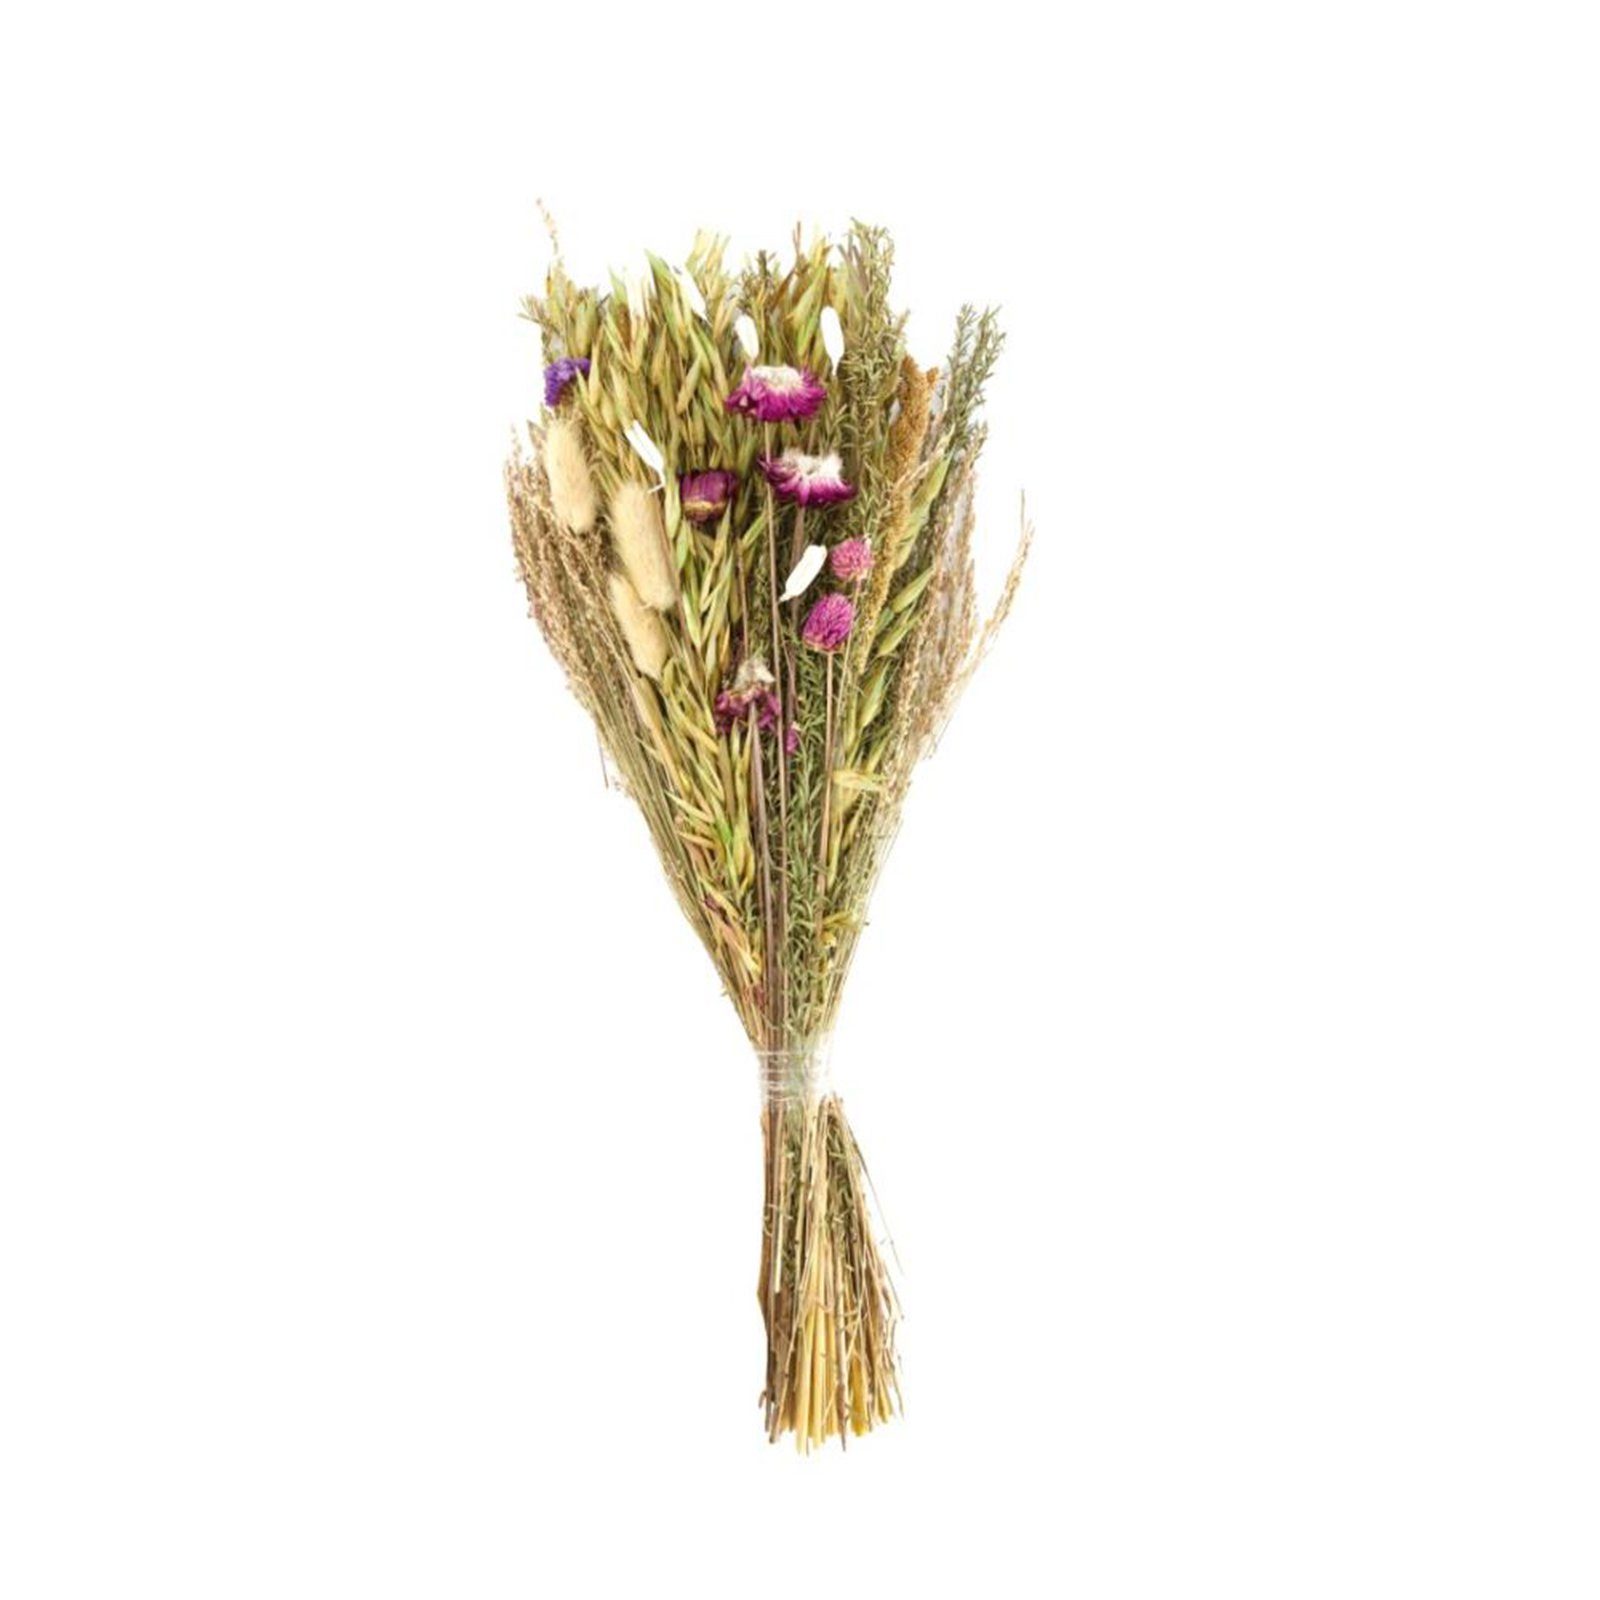 Trockenblume Getrockneter Blumenstrauß natur - dried flower bouquet - 42-45 cm, DIJK